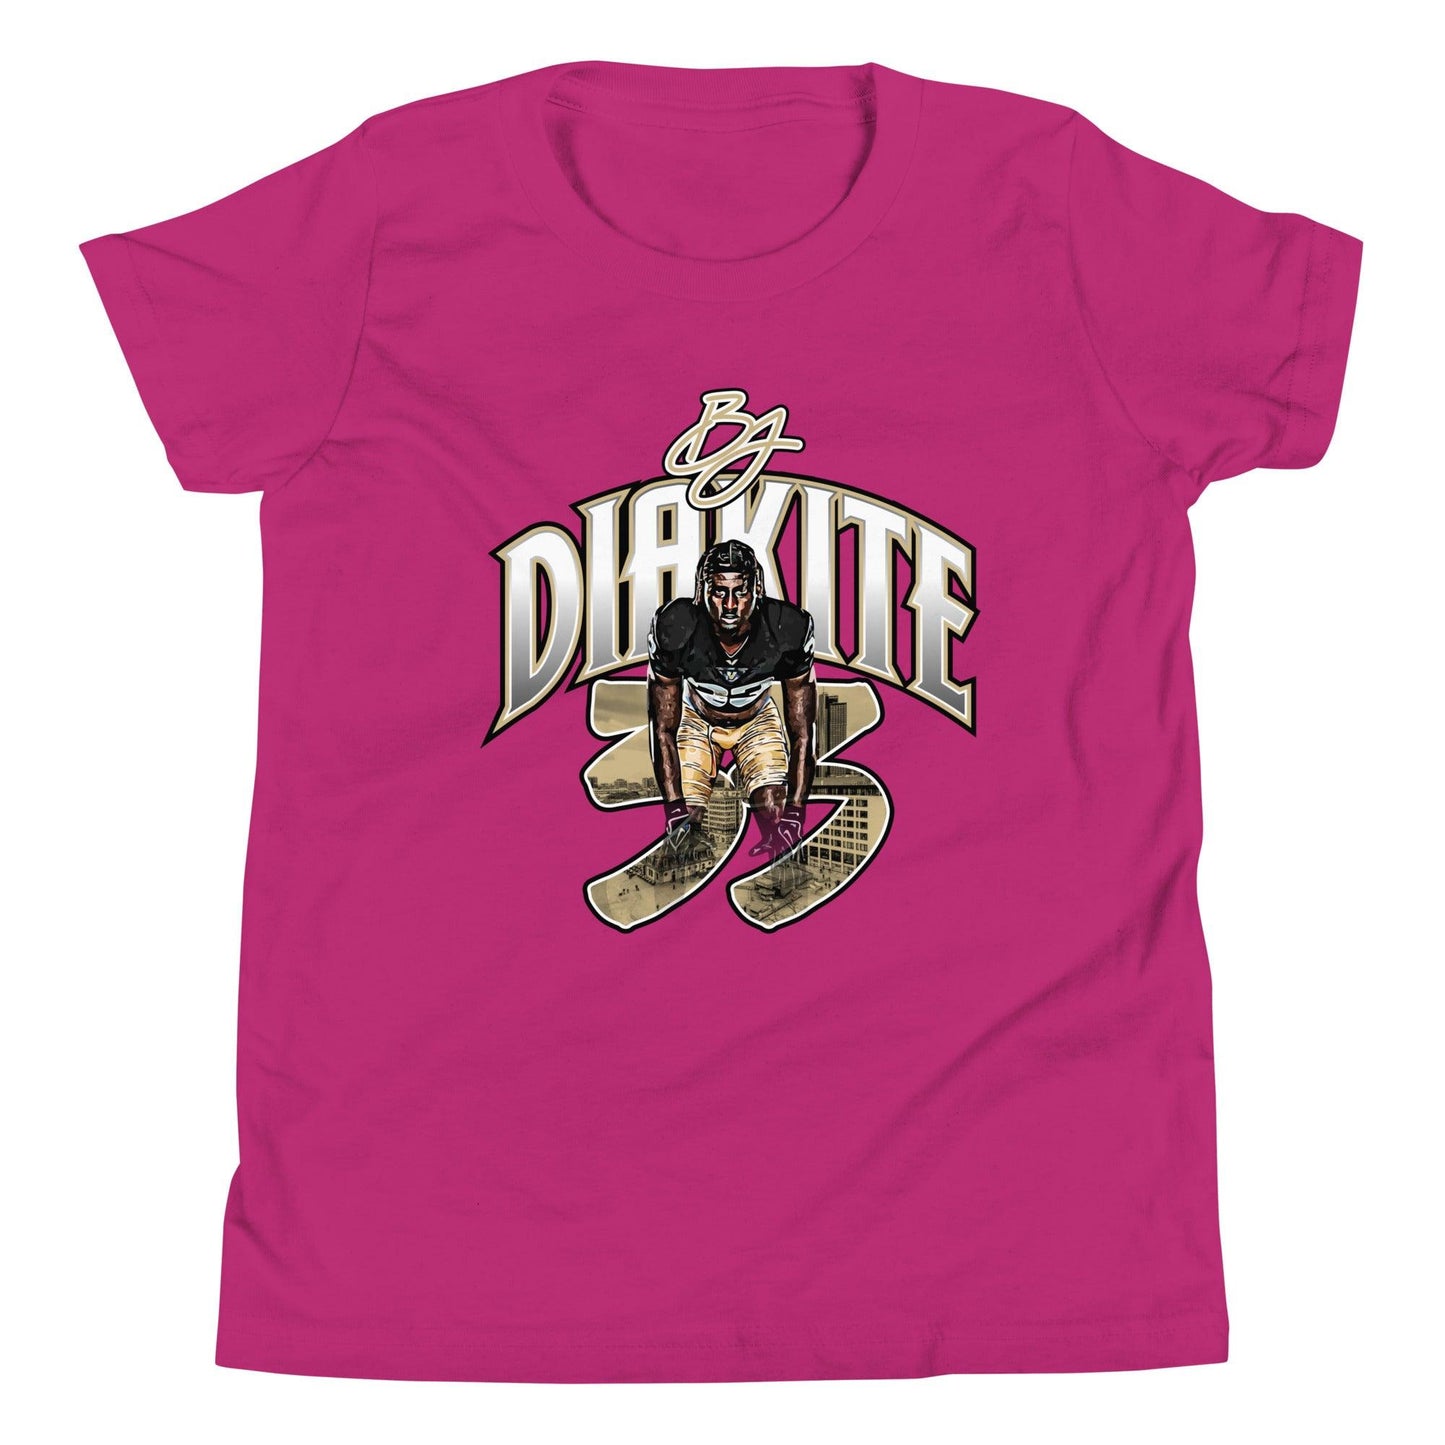 BJ Diakite "Gameday" Youth T-Shirt - Fan Arch